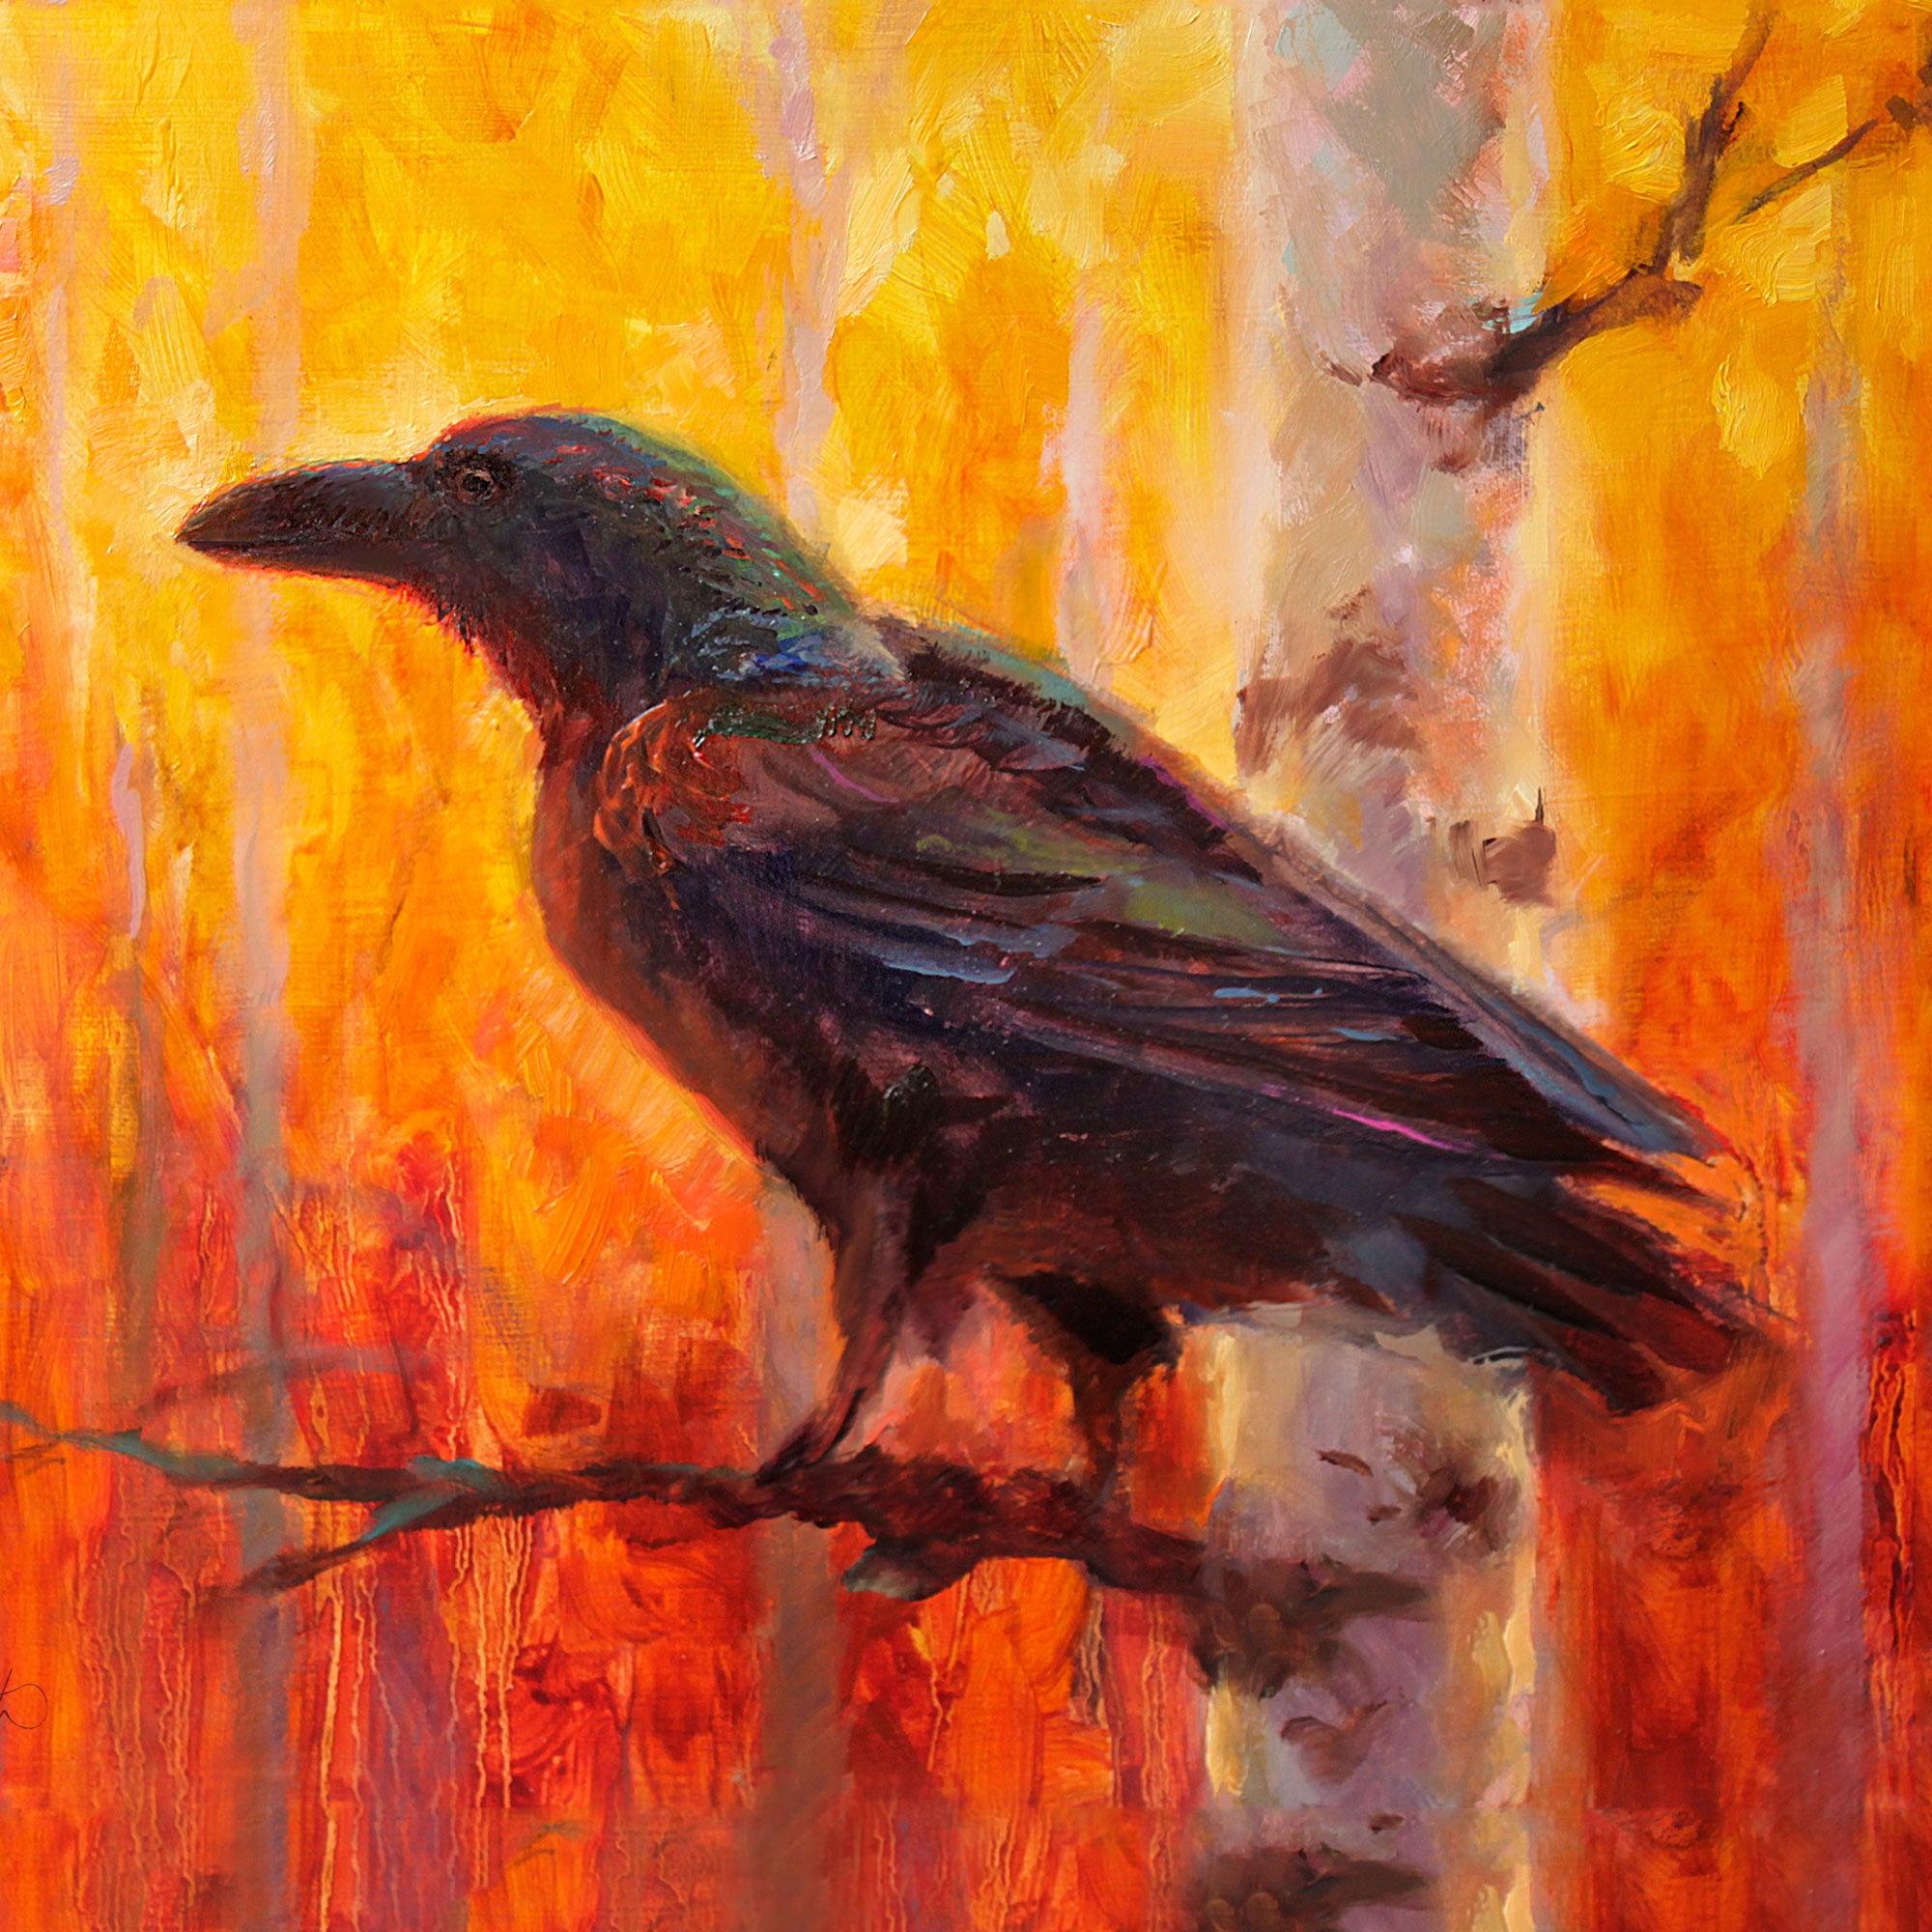 Autumn raven painting of black bird in golden forest by bird artist Karen Whitworth.